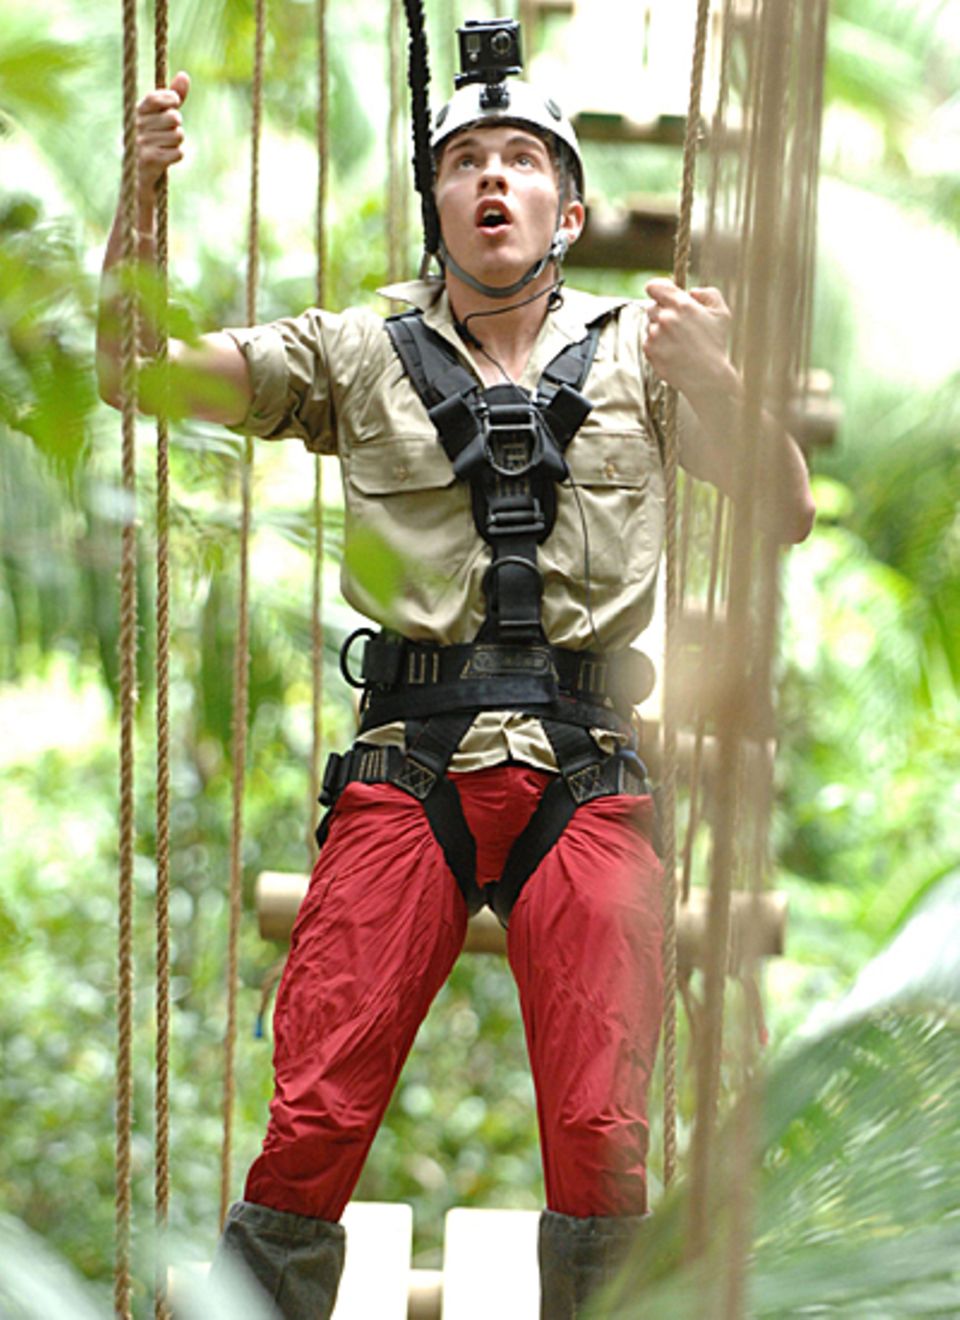 Joey Heindle klettert als erster über eine Hängebrücke ins Camp. Seine Mitinsassen begeistert er mit solch cleveren Sprüchen wie